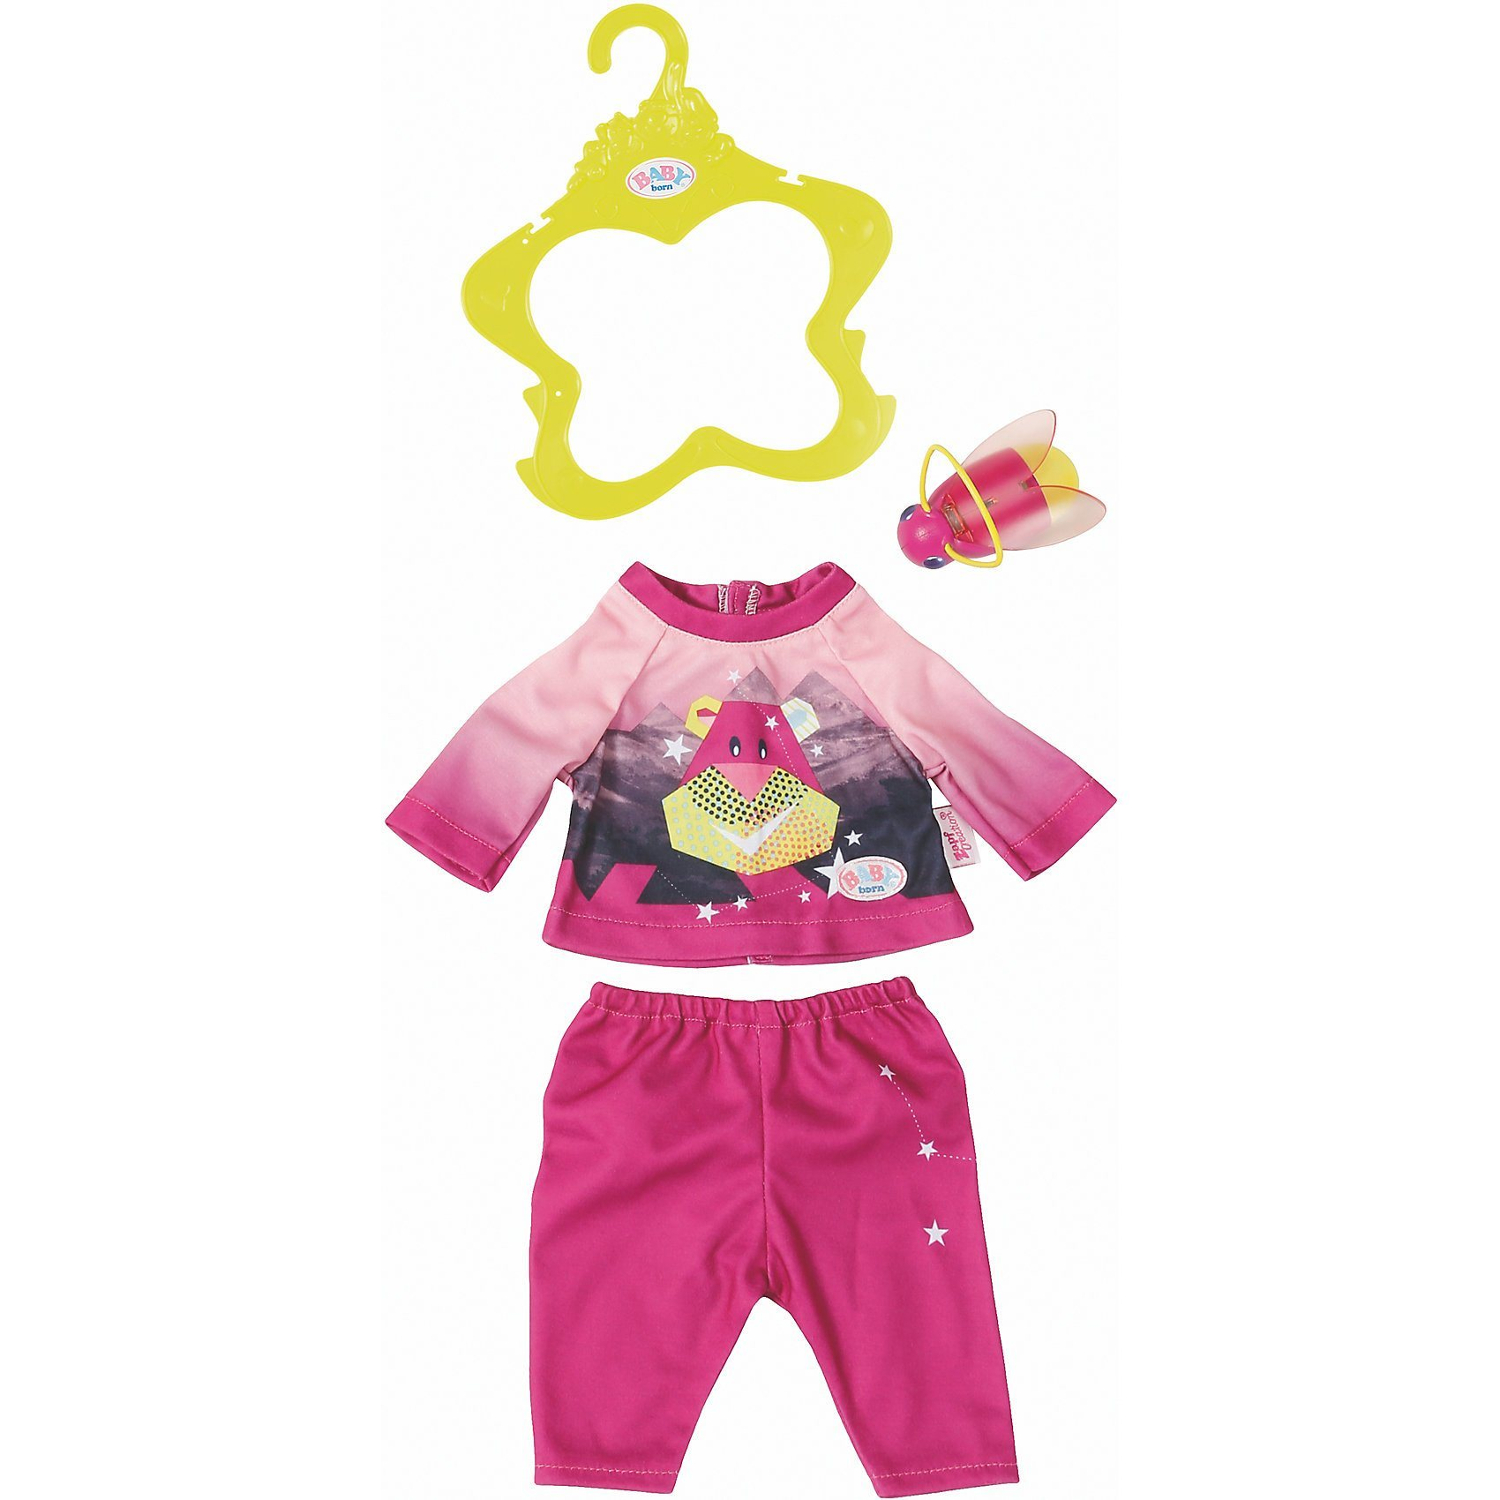 Одежда Baby born Удобный розовый костюмчик и светлячок-ночник